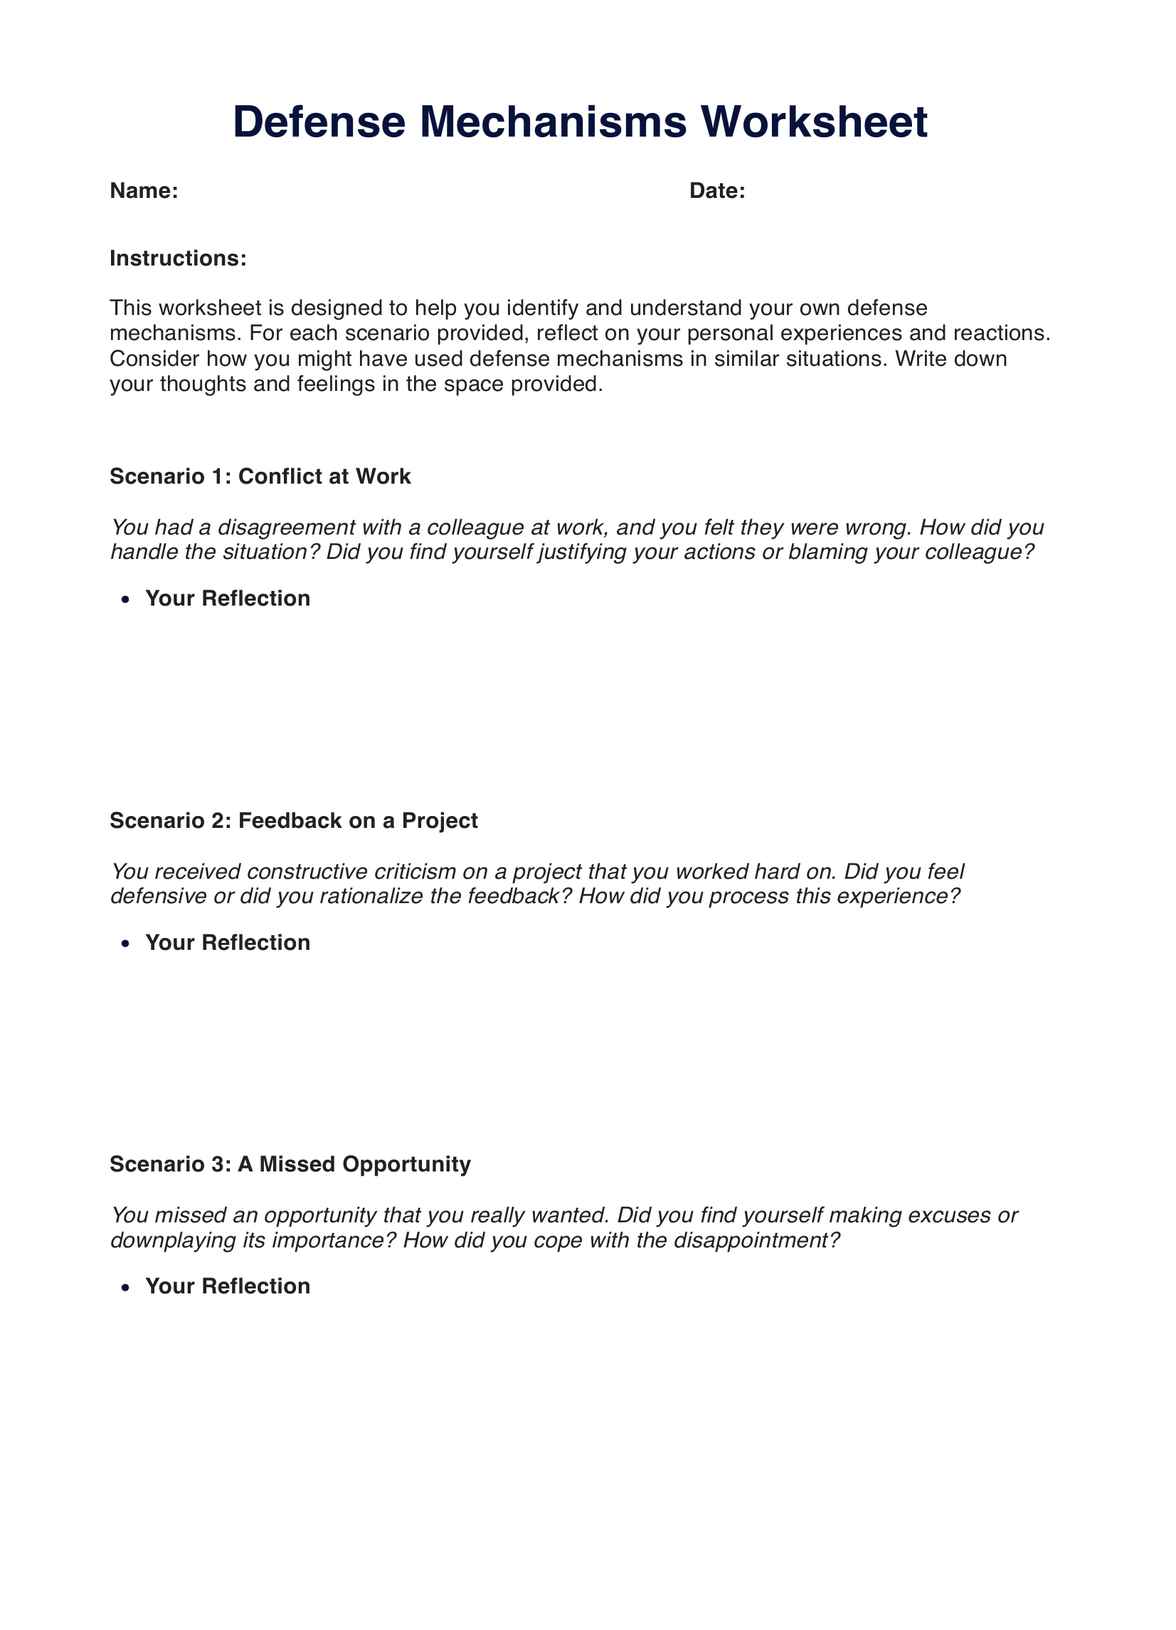 Defense Mechanisms Worksheet PDF Example